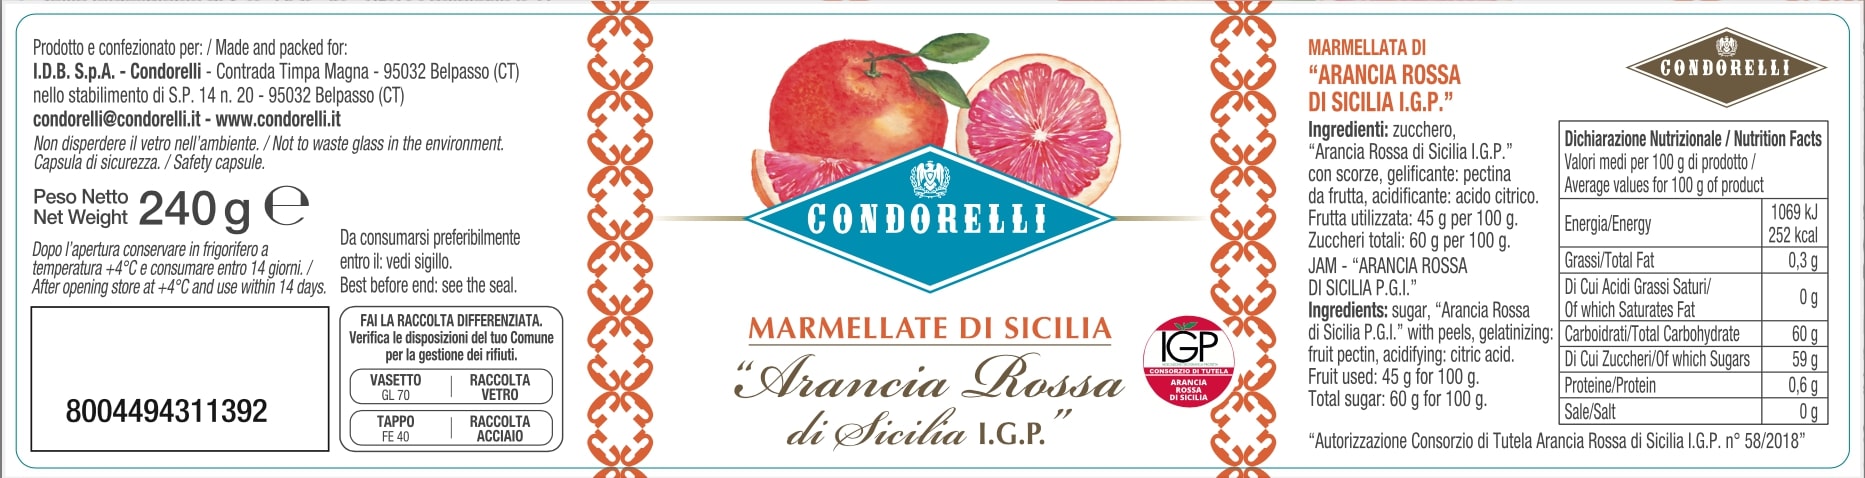 Marmellata di Sicilia - Arancia Rossa di Sicilia I.G.P.